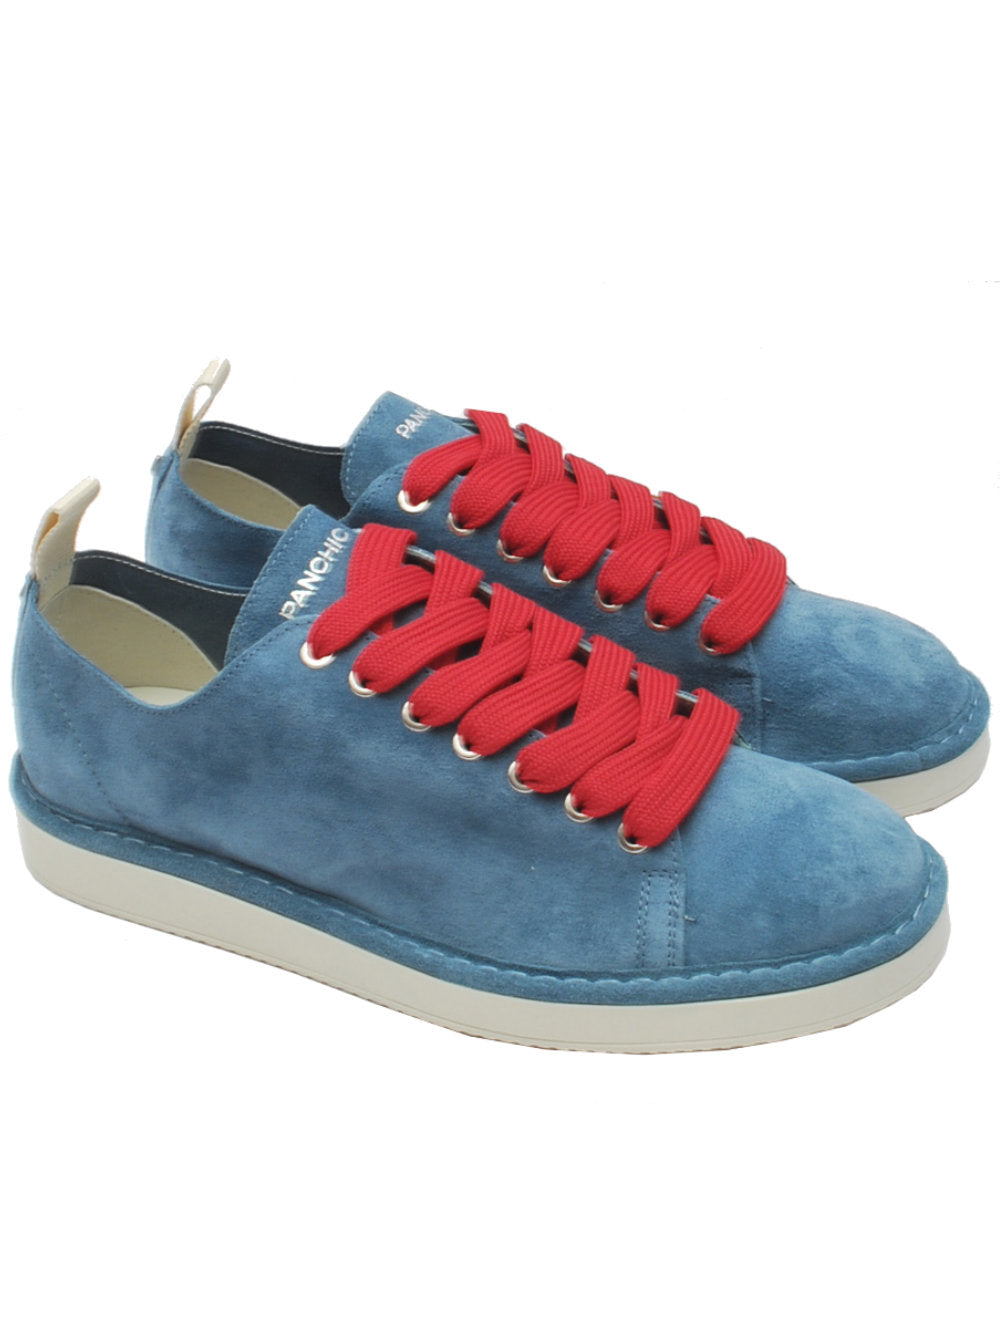 Panchic sneaker basic blu red p01m011 pe24